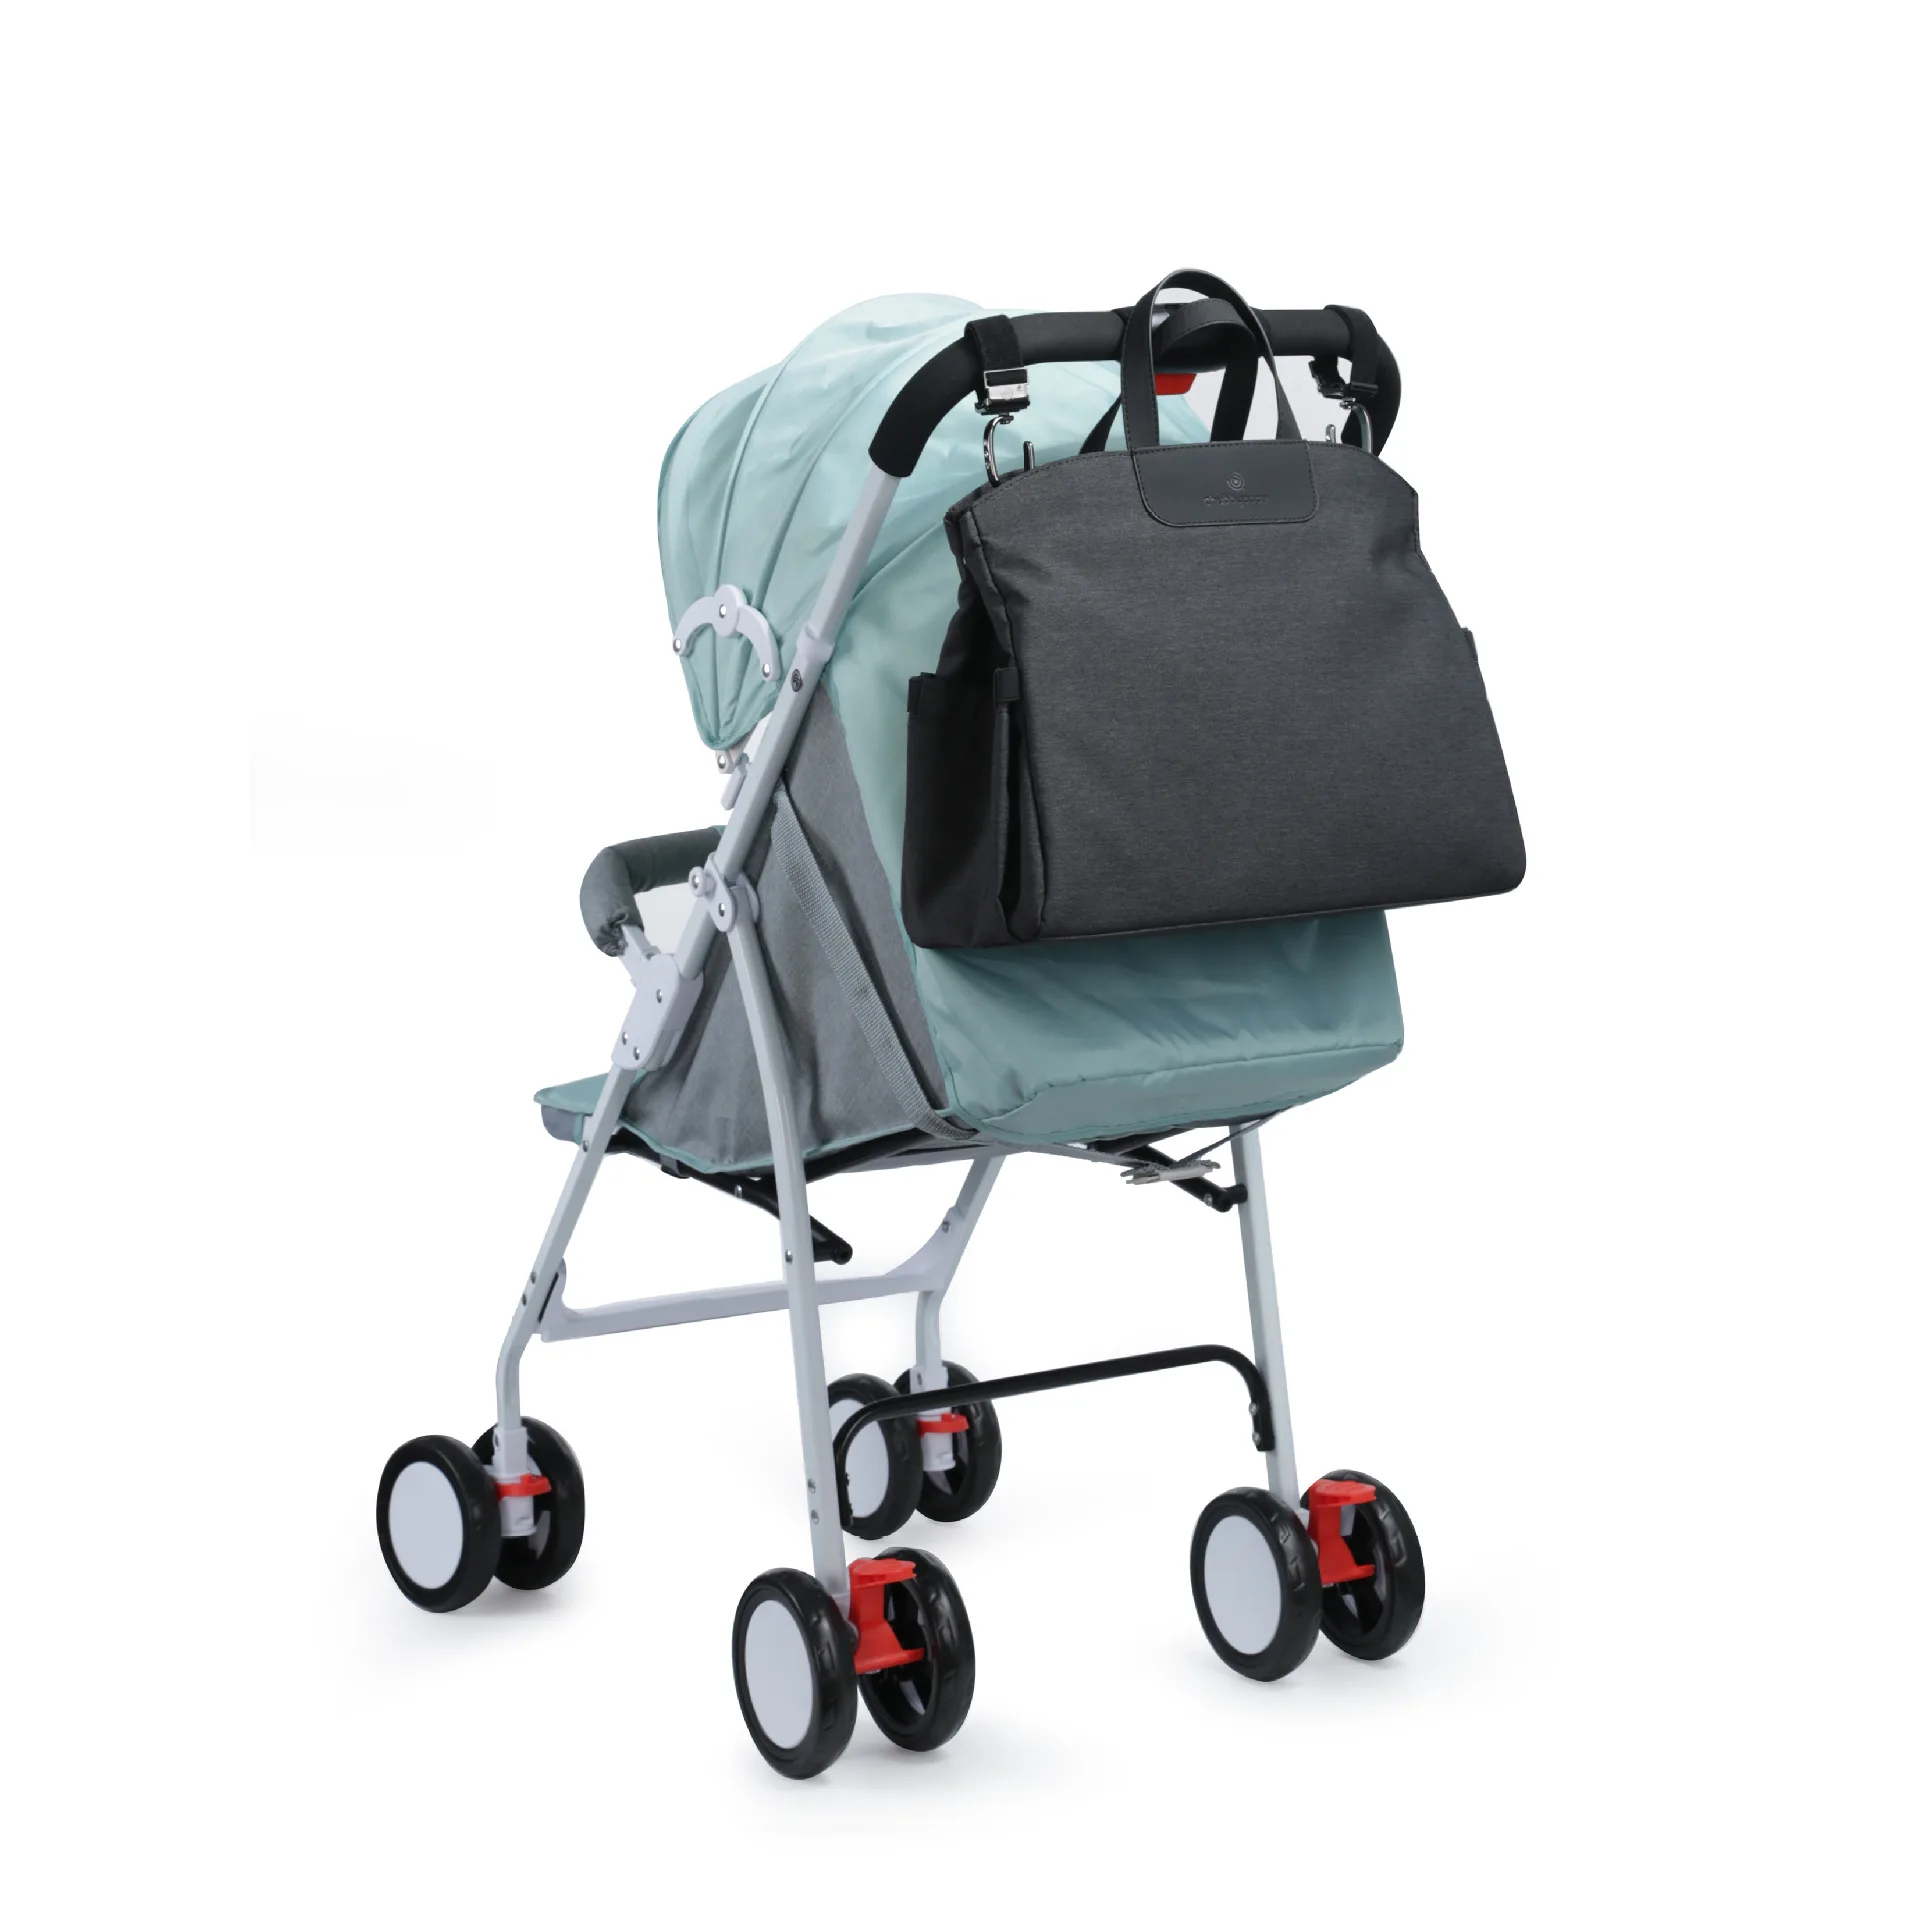 Сумка для подгузников для мамы, сумка через плечо для подгузников, сумка-мессенджер для мамы, сумка для путешествий Luiertas, коляска для младенцев, органайзер для ухода за ребенком